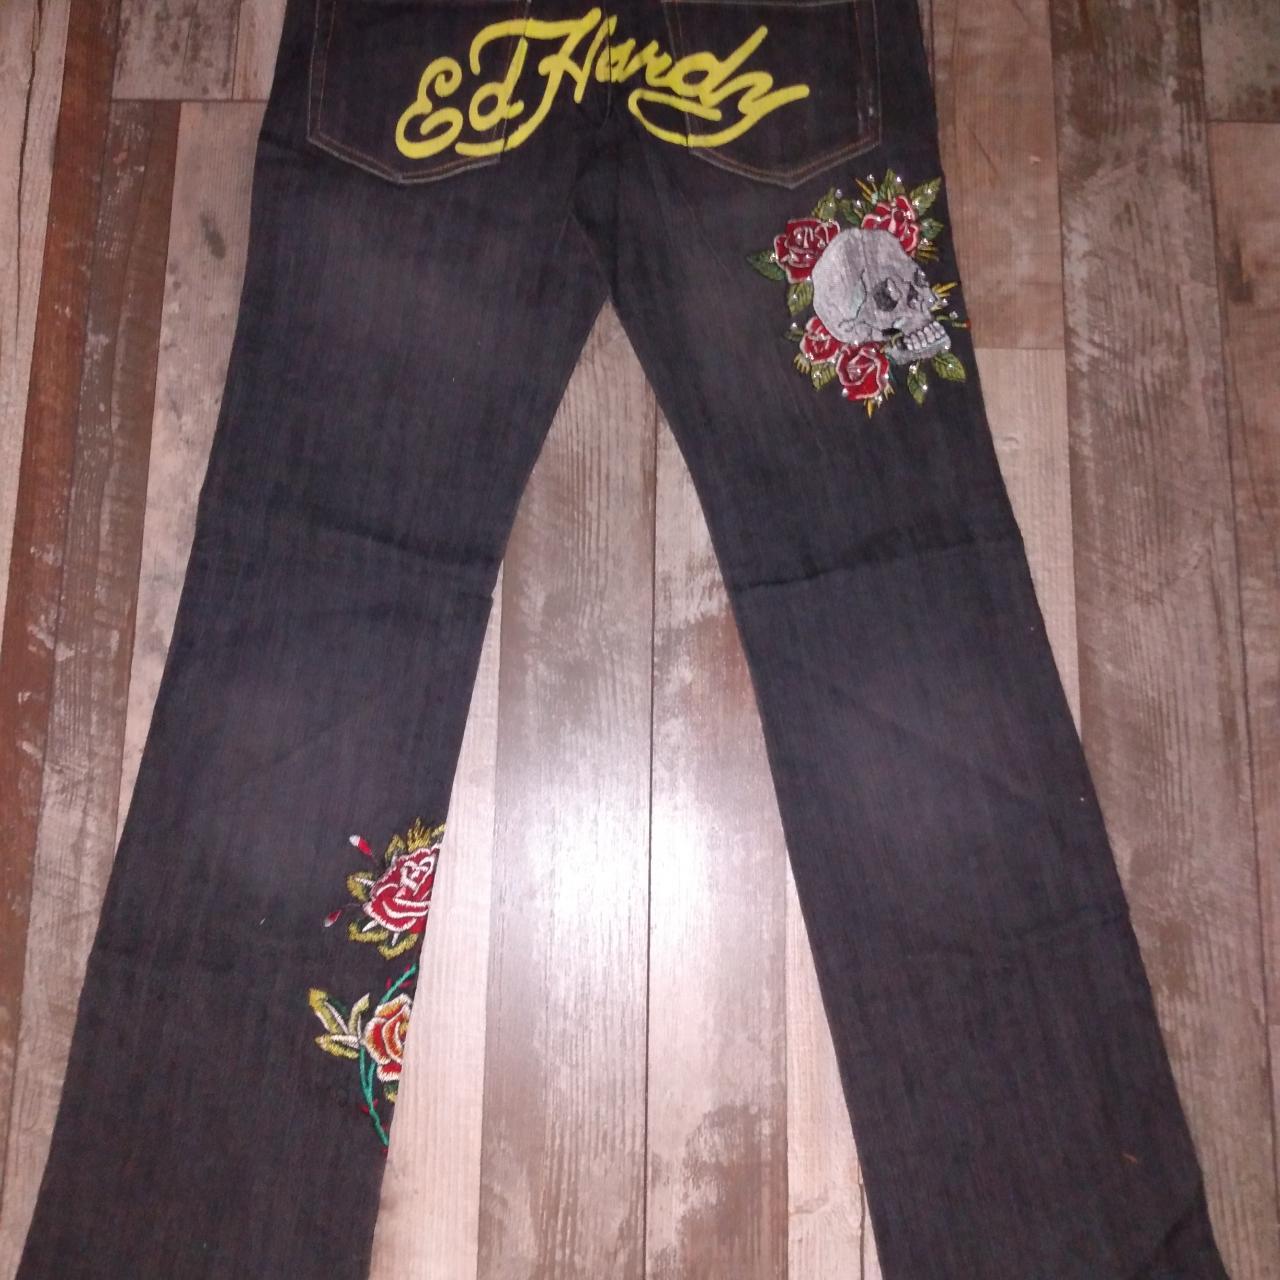 Ed Hardy by Christian Audigier men's jeans trousers size W 36, L 34 in |  eBay